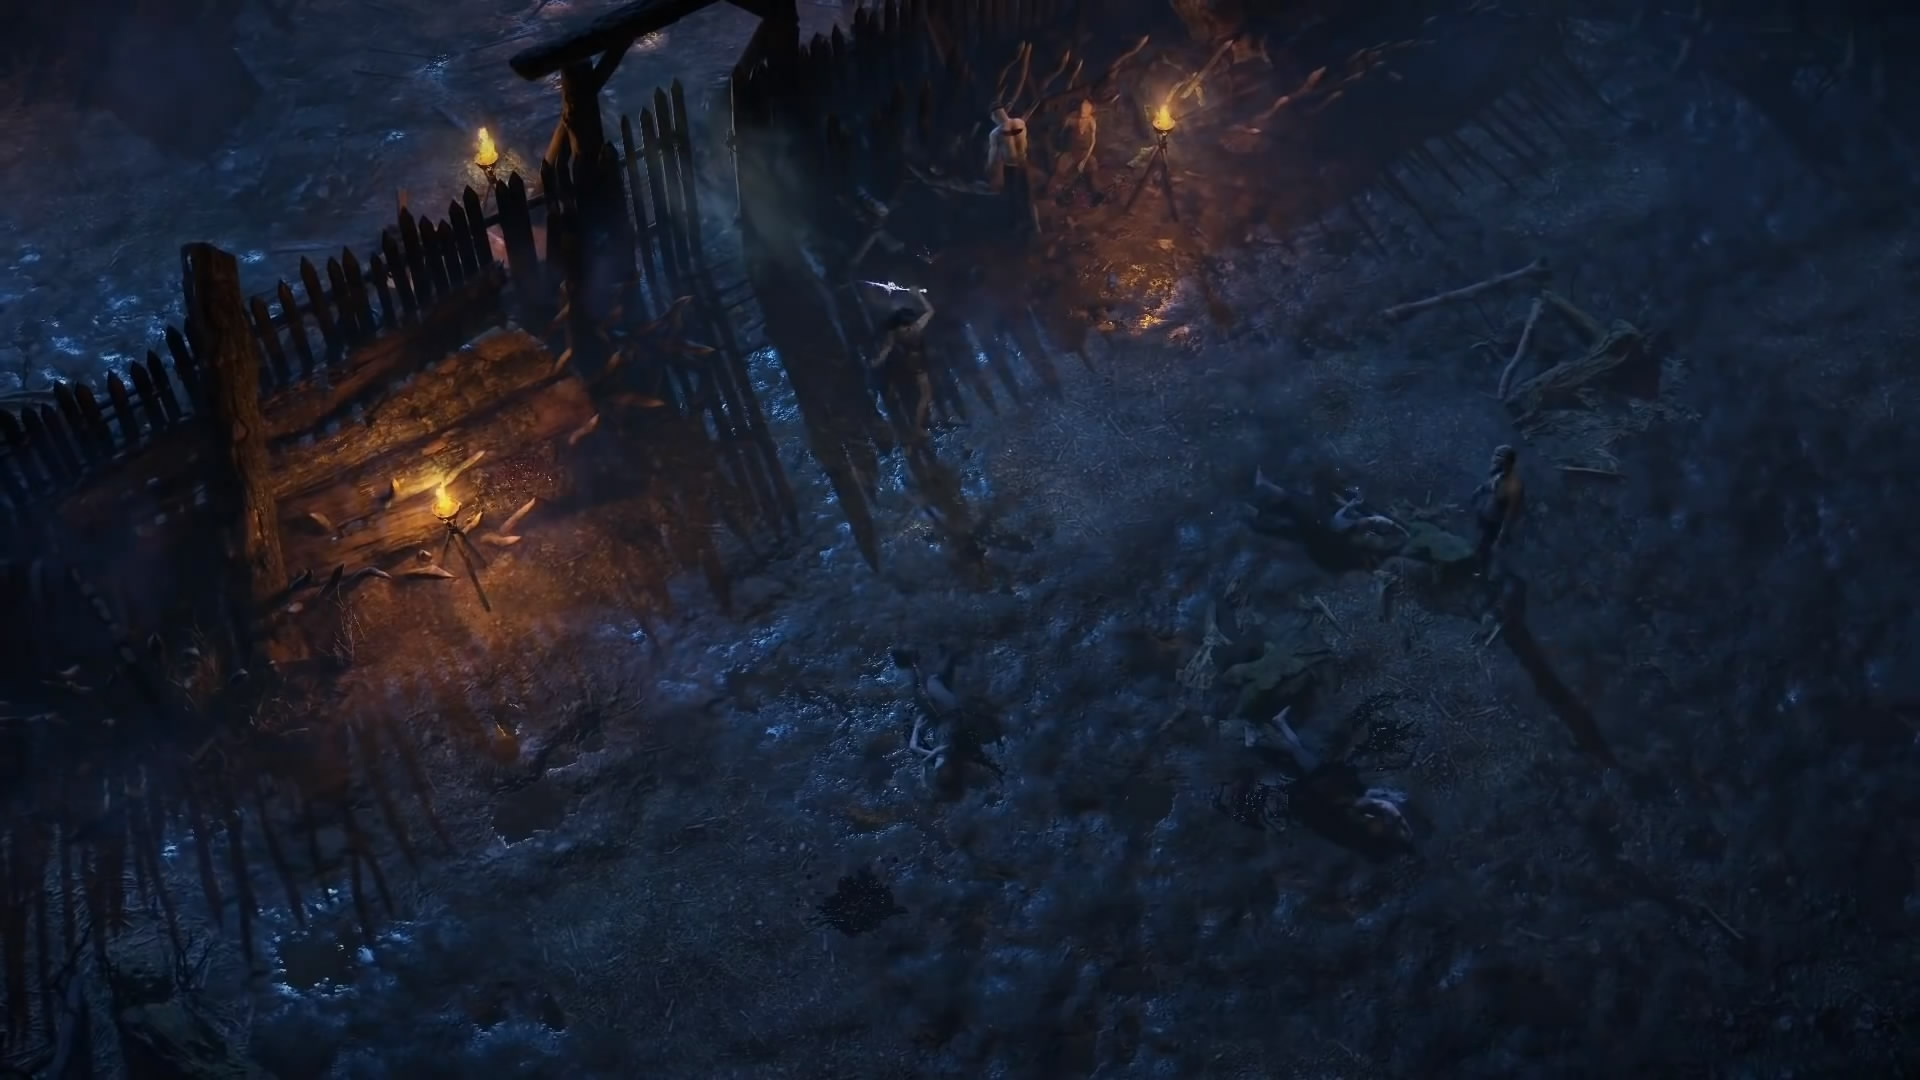 《流放之路2》幕后花絮视频 展示精美游戏画面